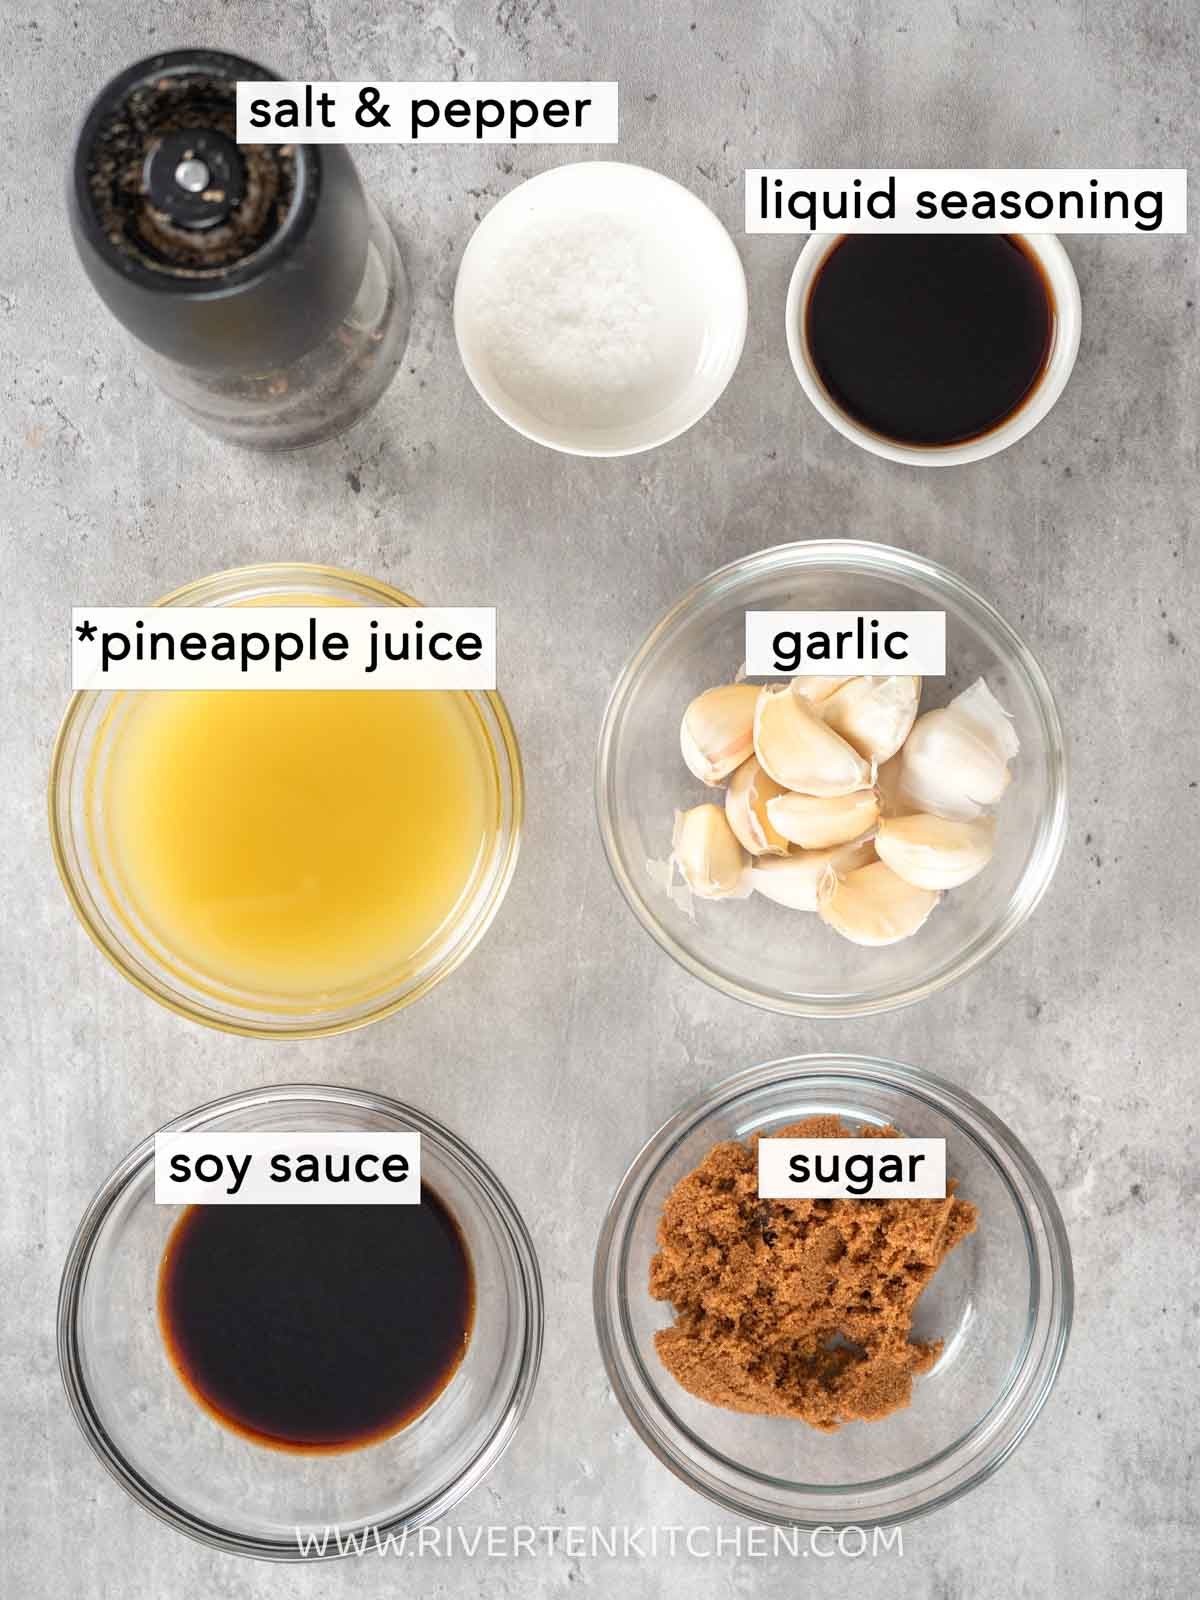 soy sauce, garlic, pineapple juice, brown sugar, liquid seasoning